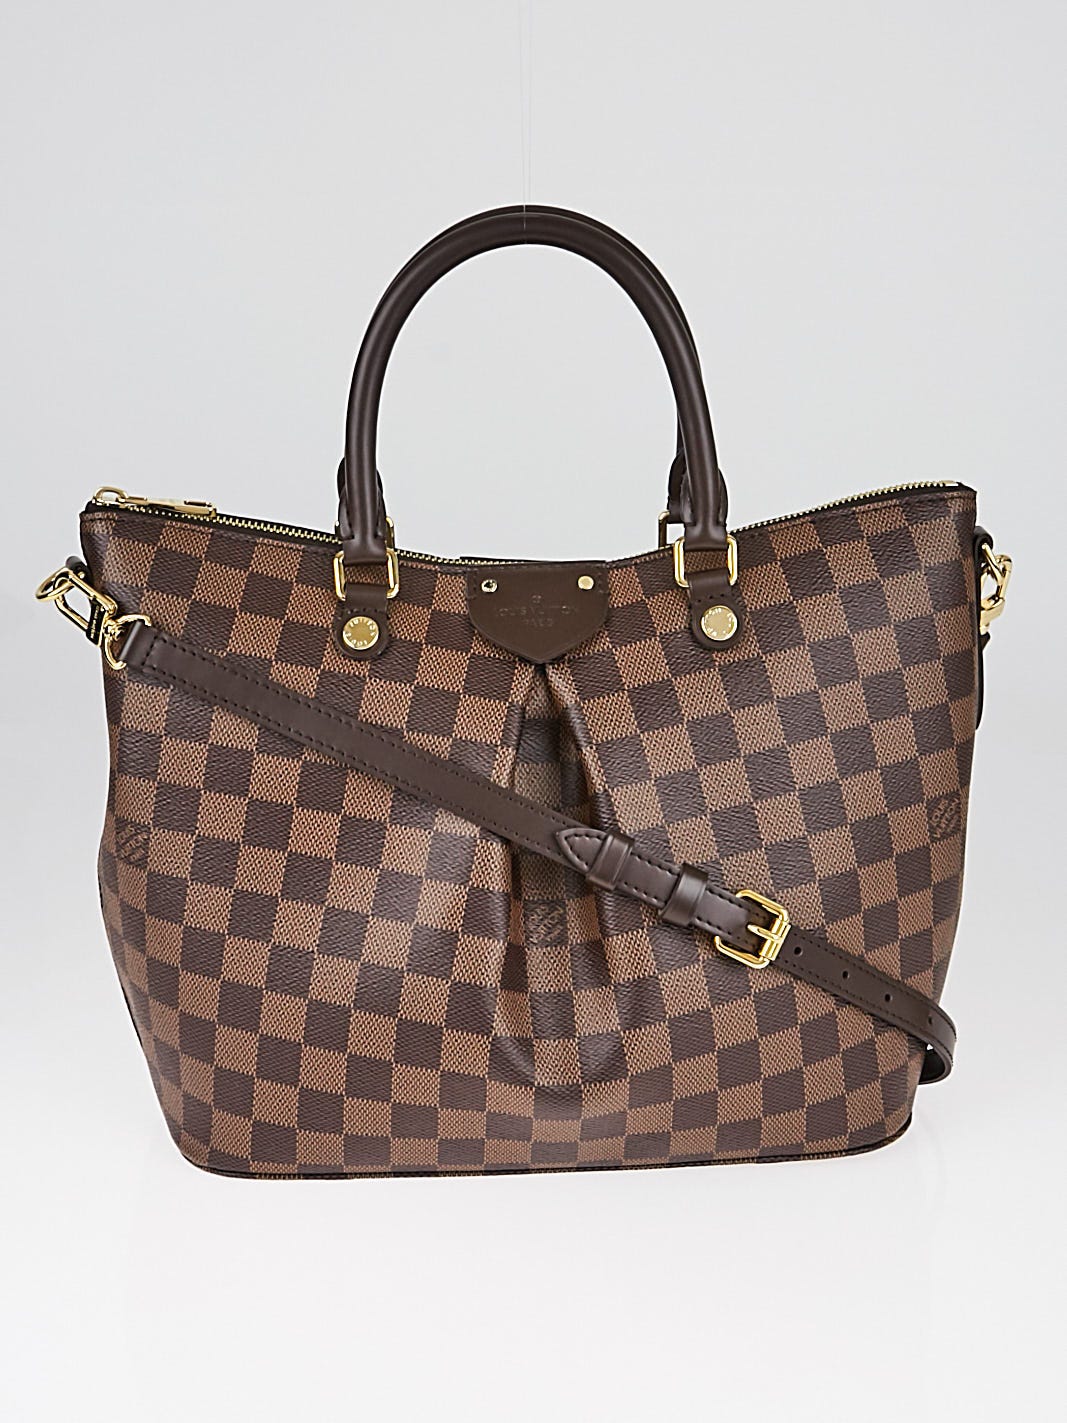 Authentic Louis Vuitton Damier Ebene Canvas Siena mm Handbag